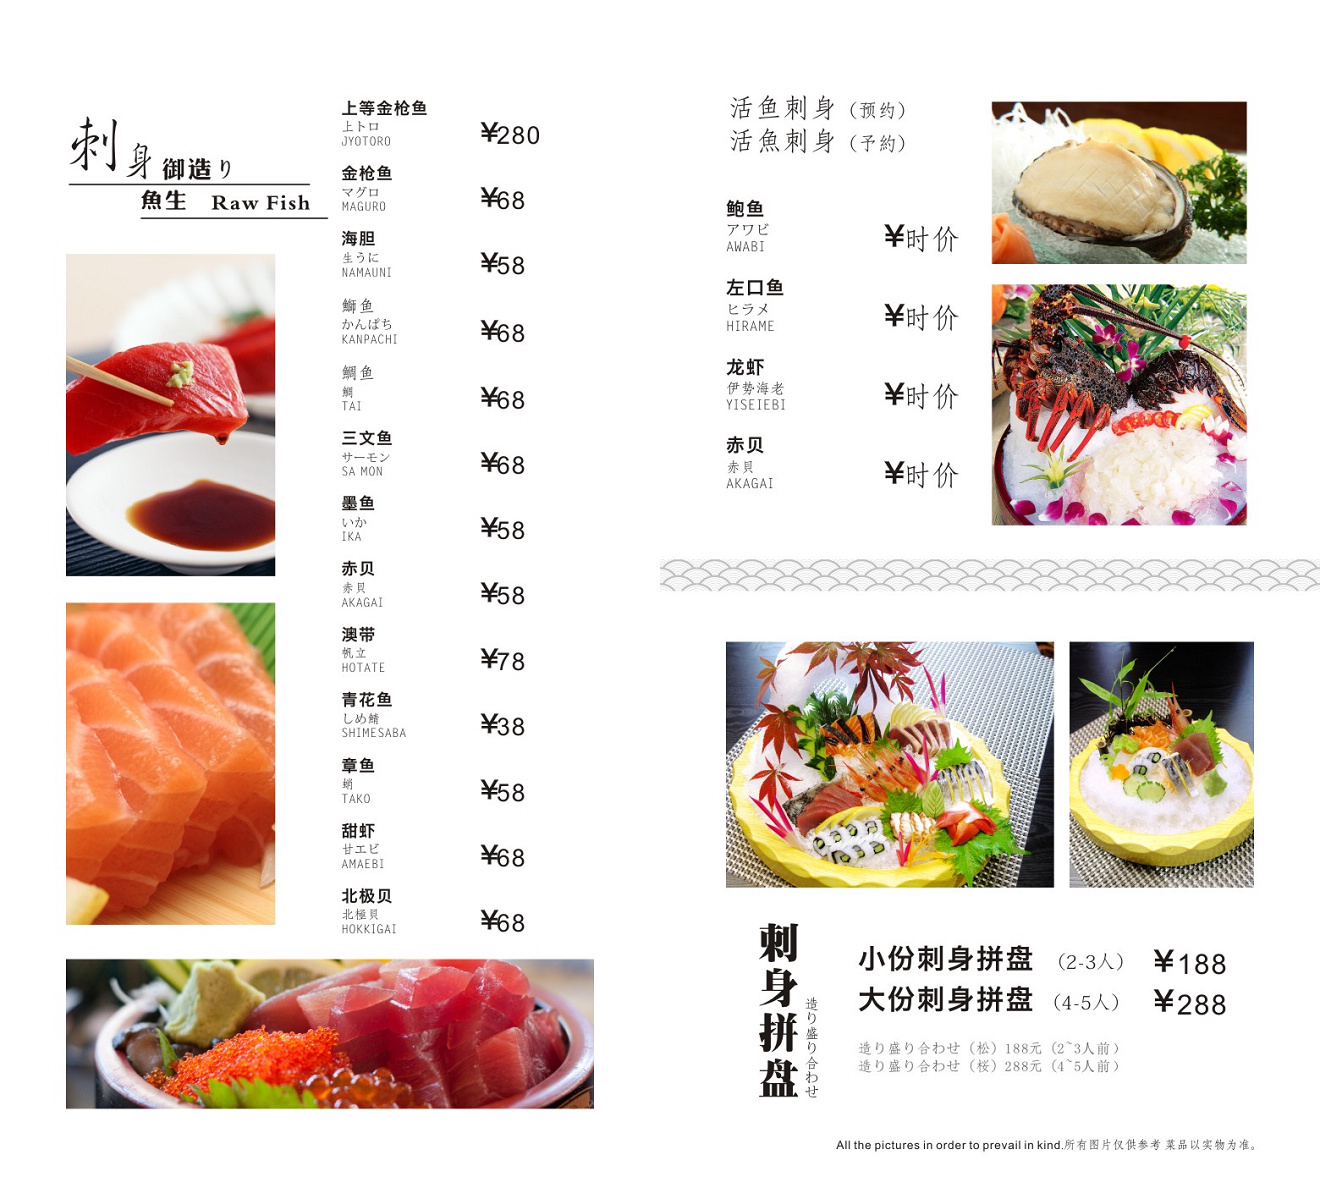 ﻿川菜馆/海鲜/日本料理 川菜菜谱 餐馆菜单 海鲜菜谱 满座菜谱